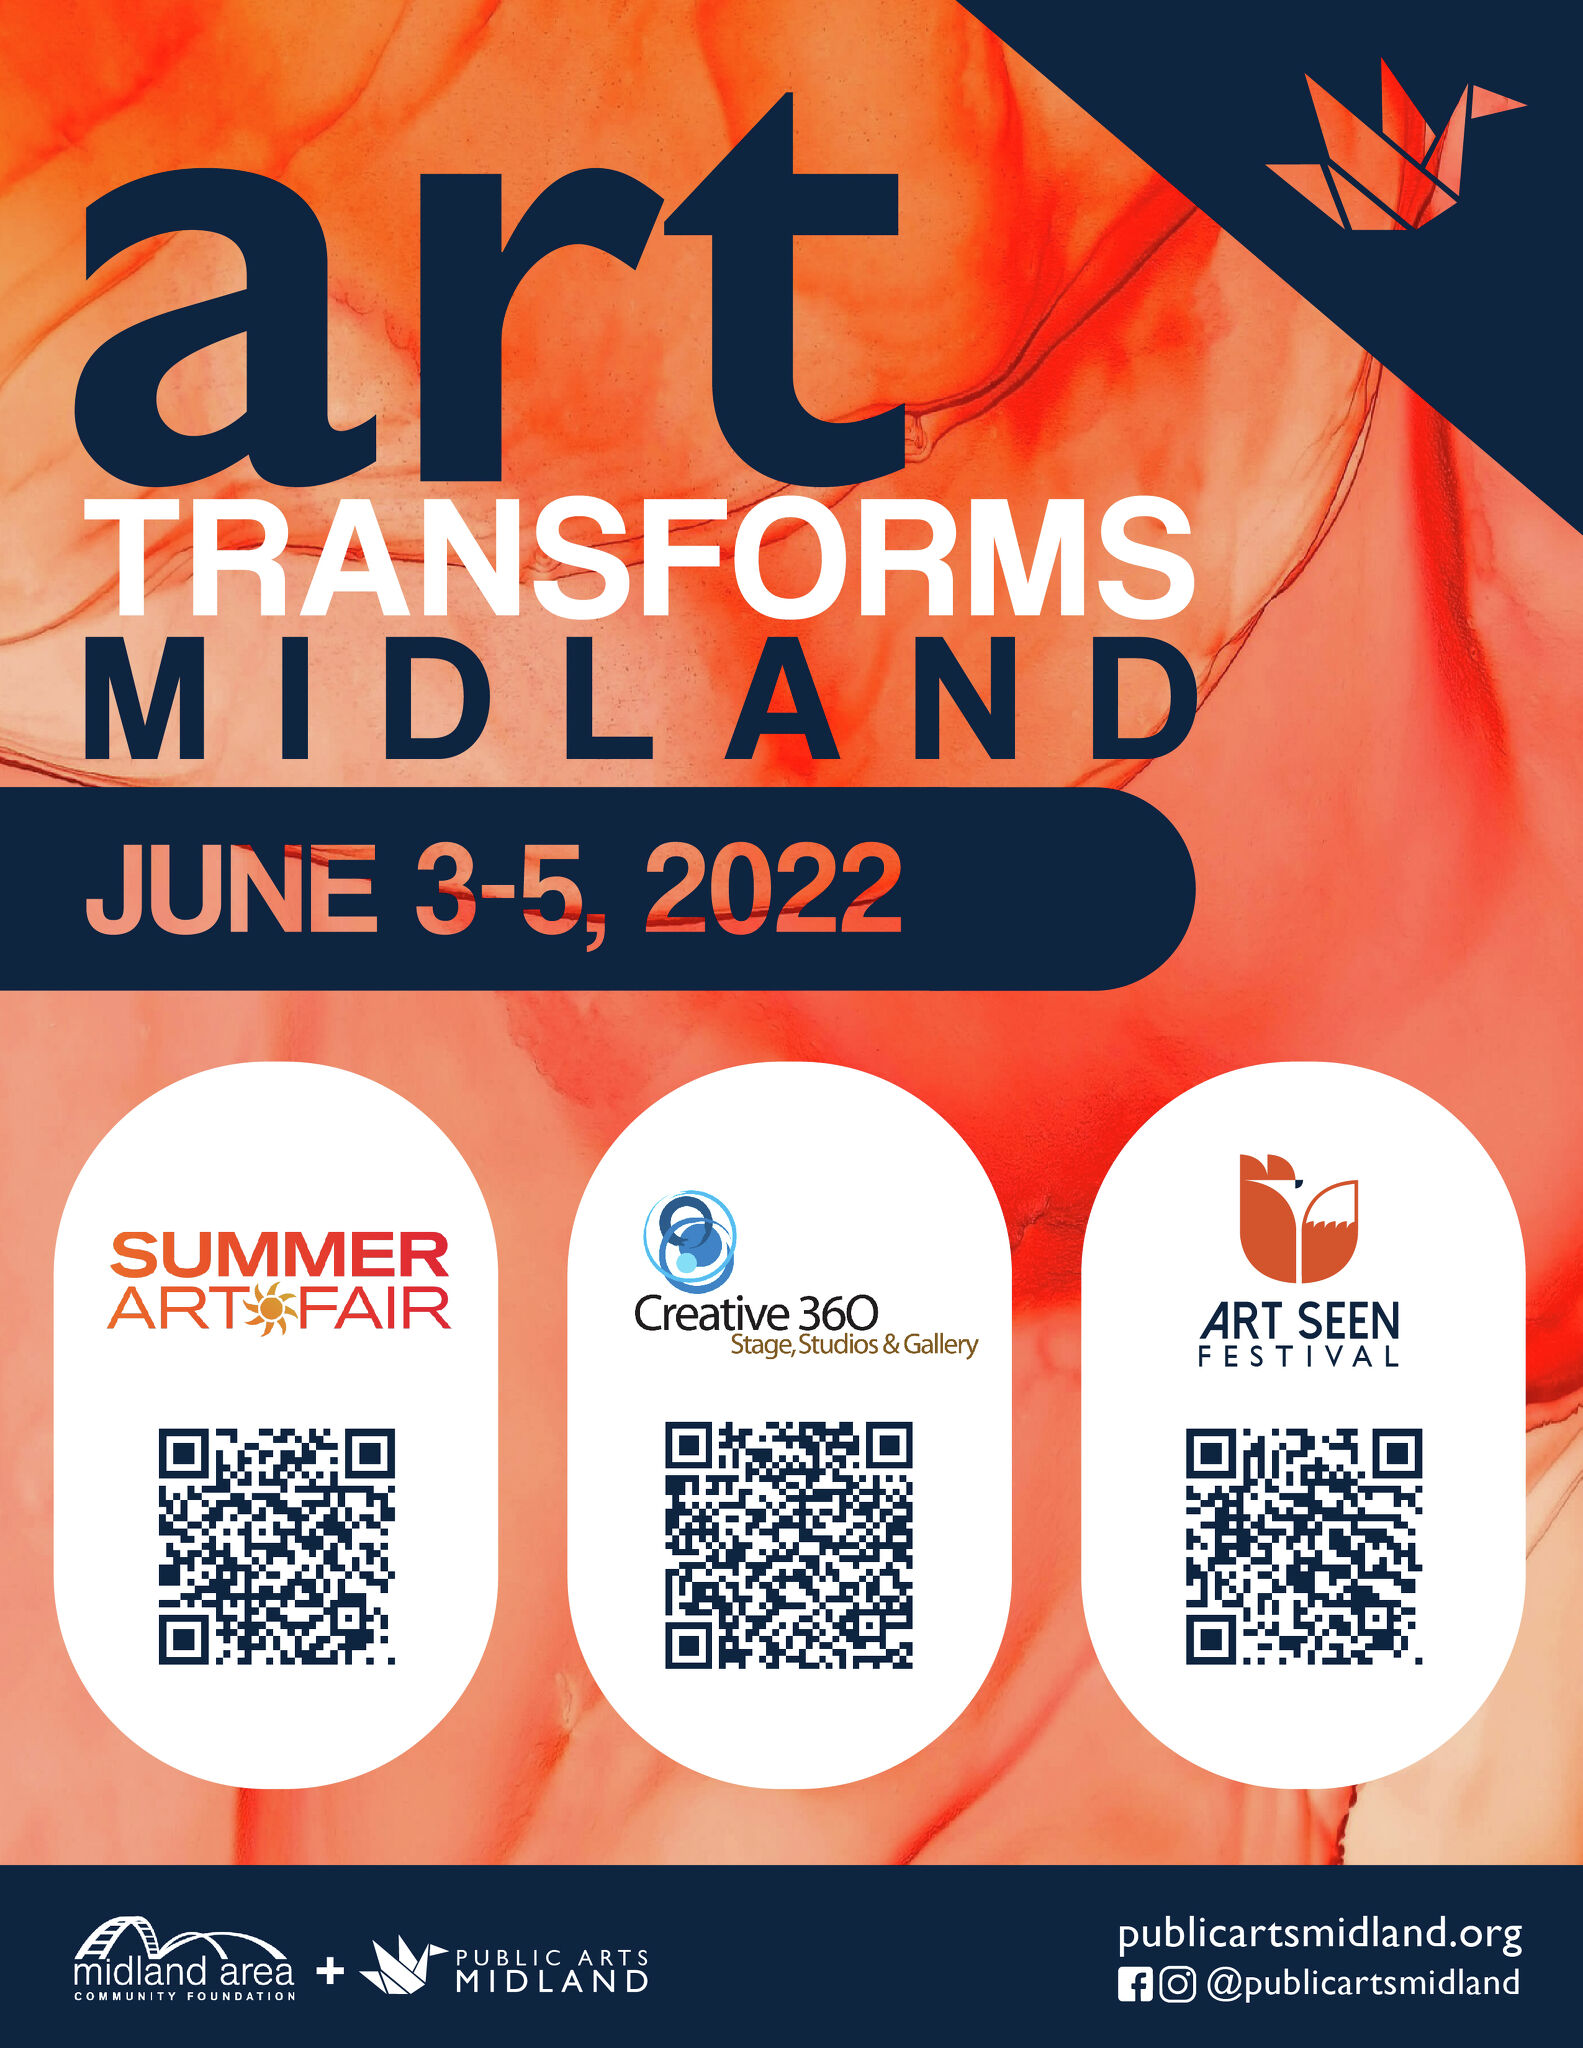 Art Fair, Art Seen and Art Speaks return this weekend to Midland